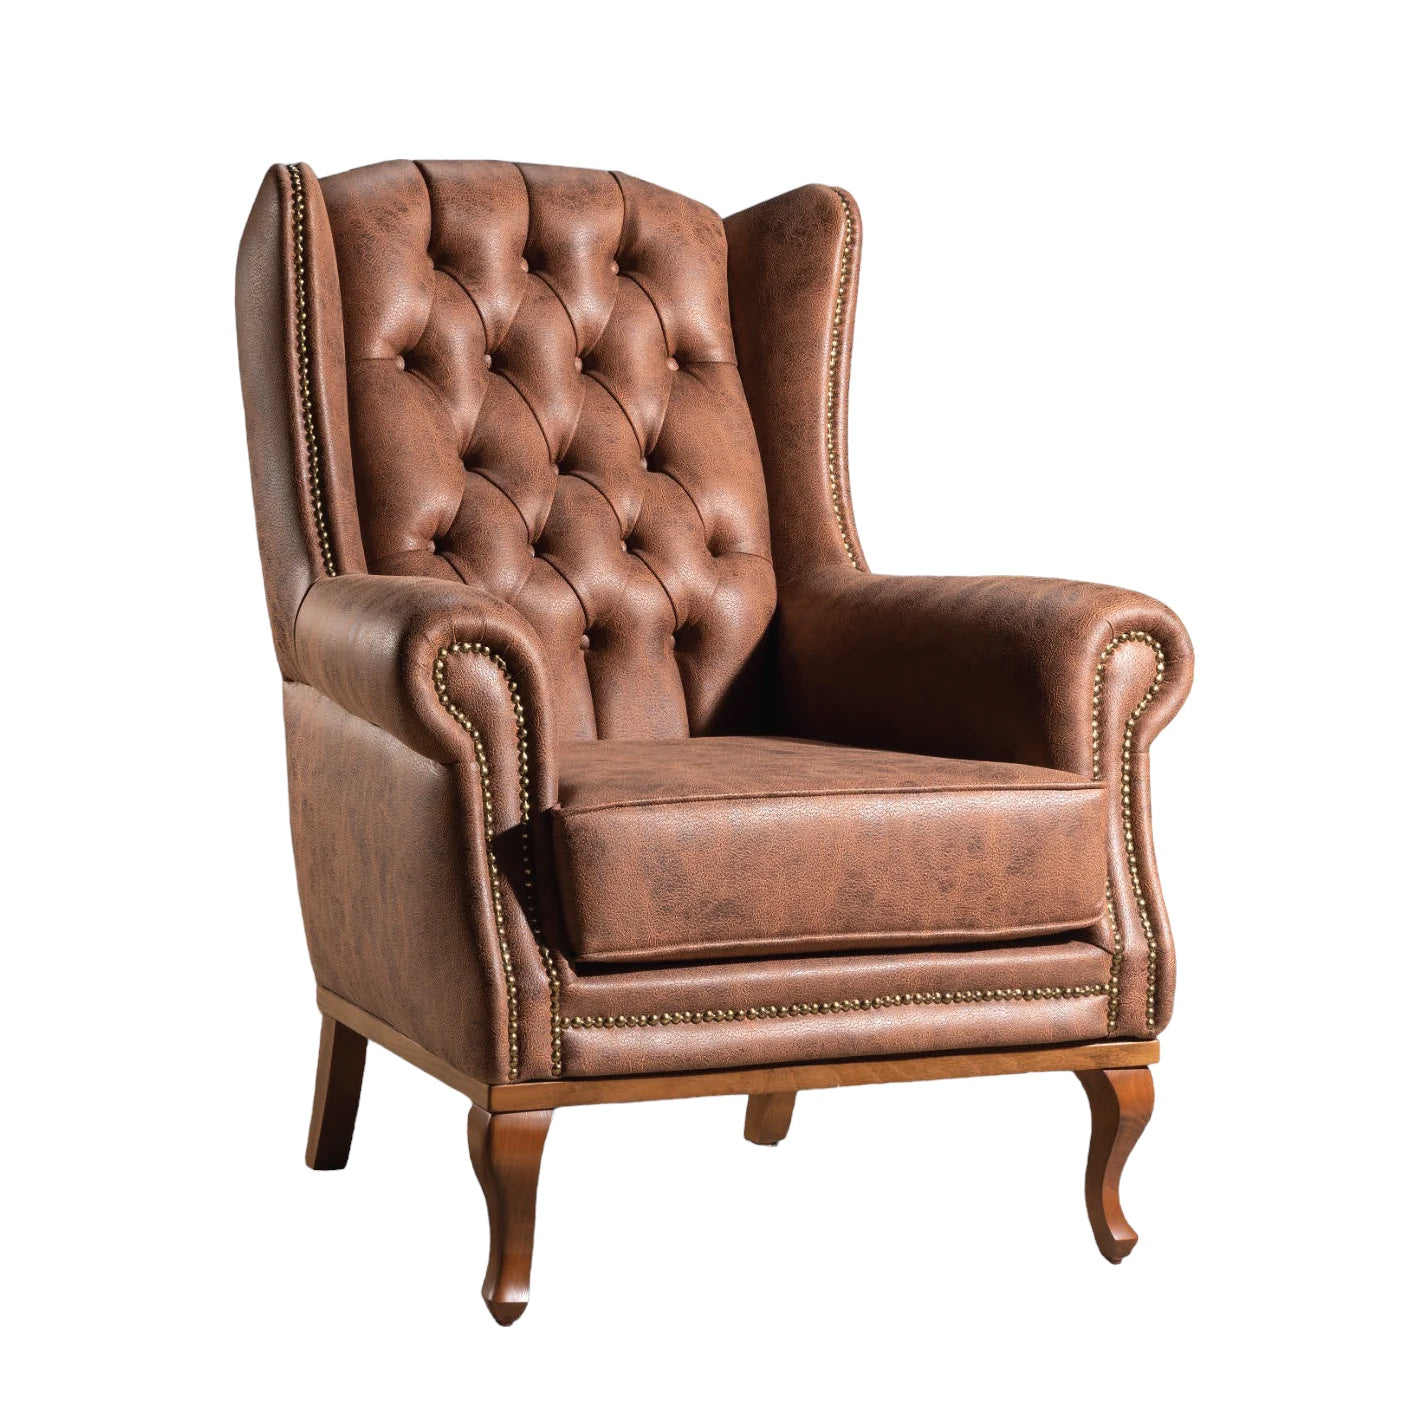 Quinn Fireside Chair - Brown